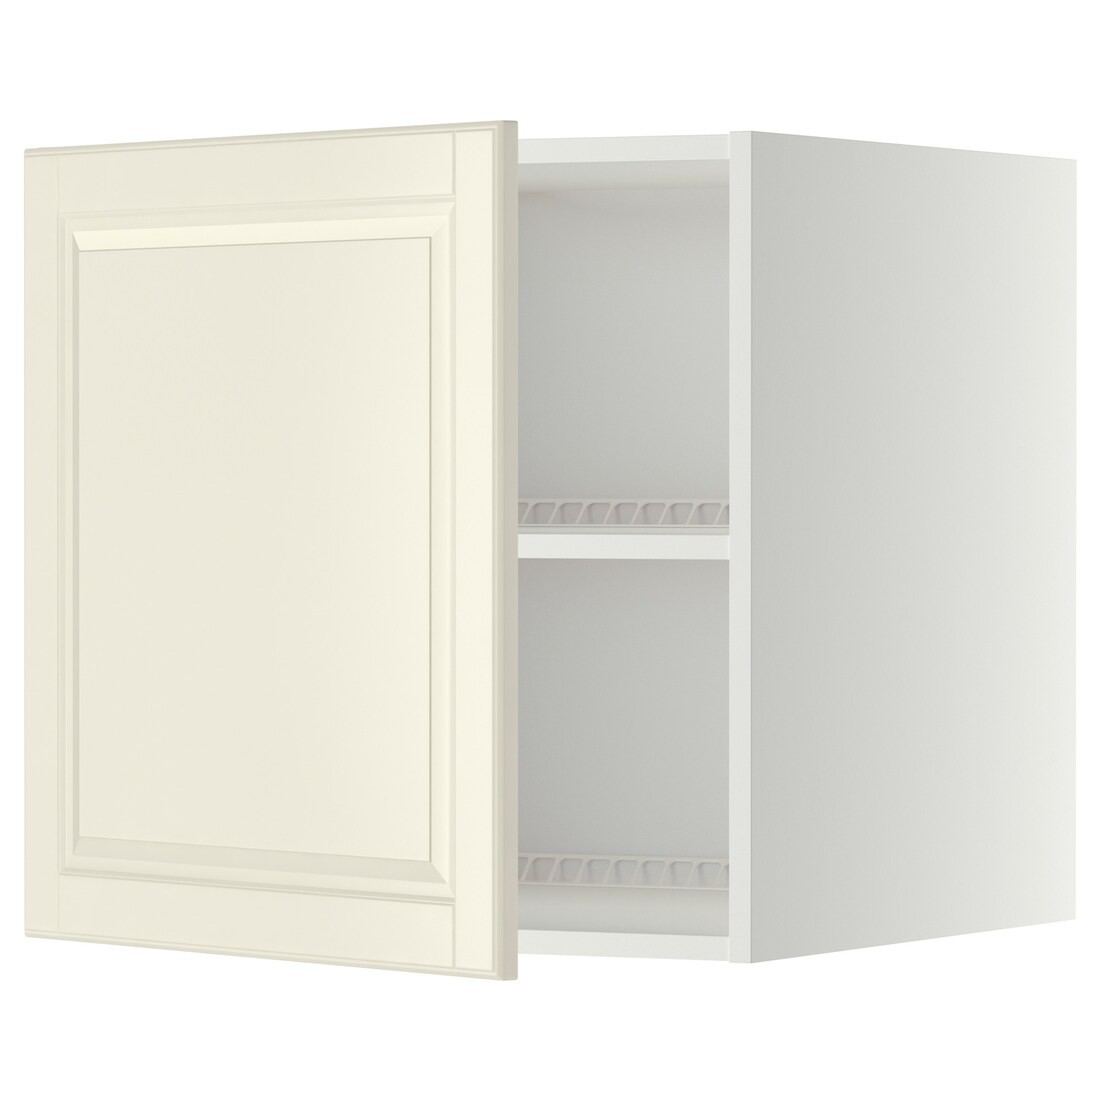 METOD МЕТОД Верхня шафа для холодильника / морозильника, білий / Bodbyn кремовий, 60x60 см